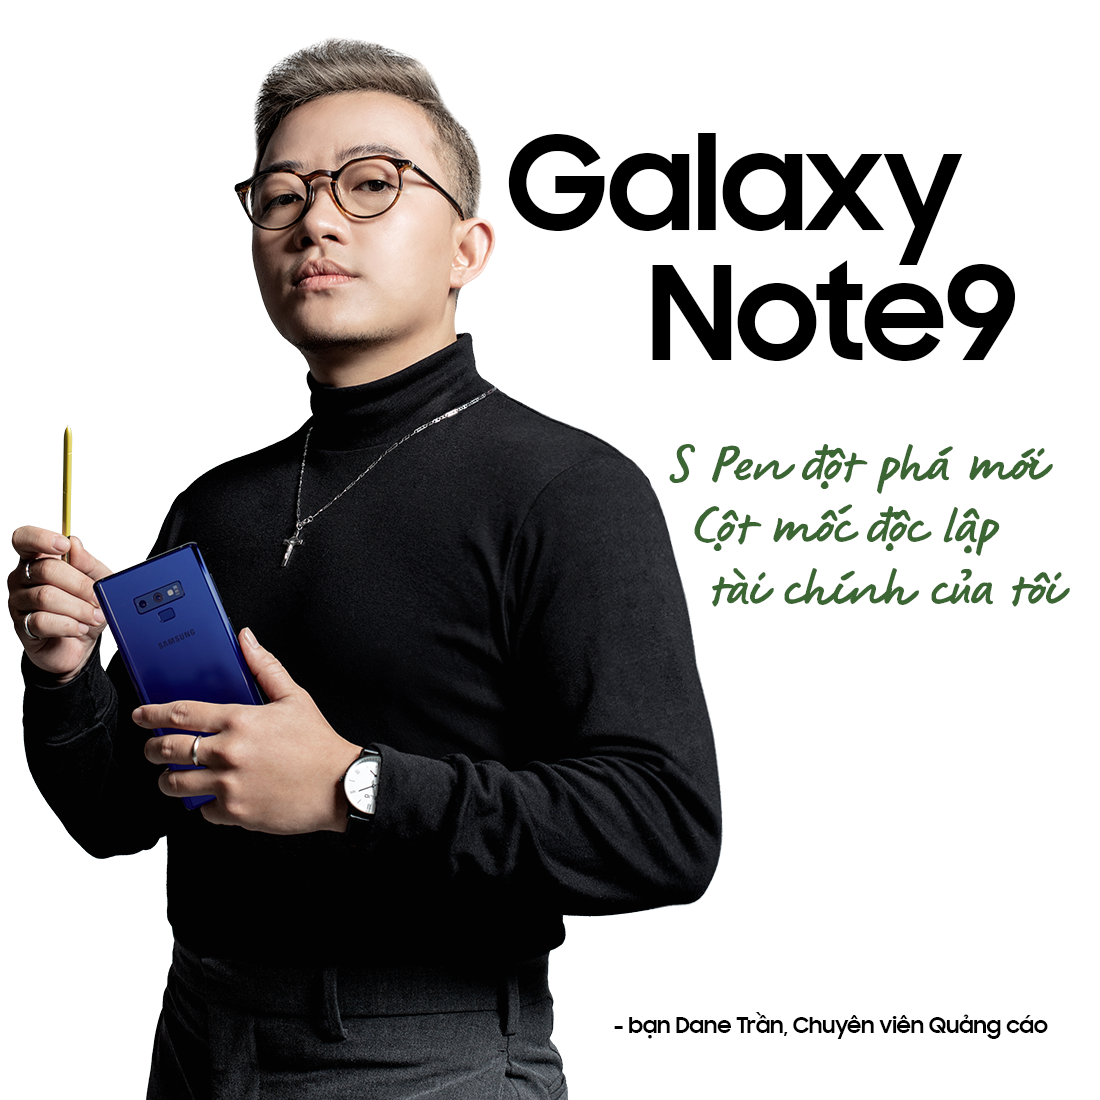 “Quyền năng” từ Galaxy Note trong mắt người dùng - ảnh 4